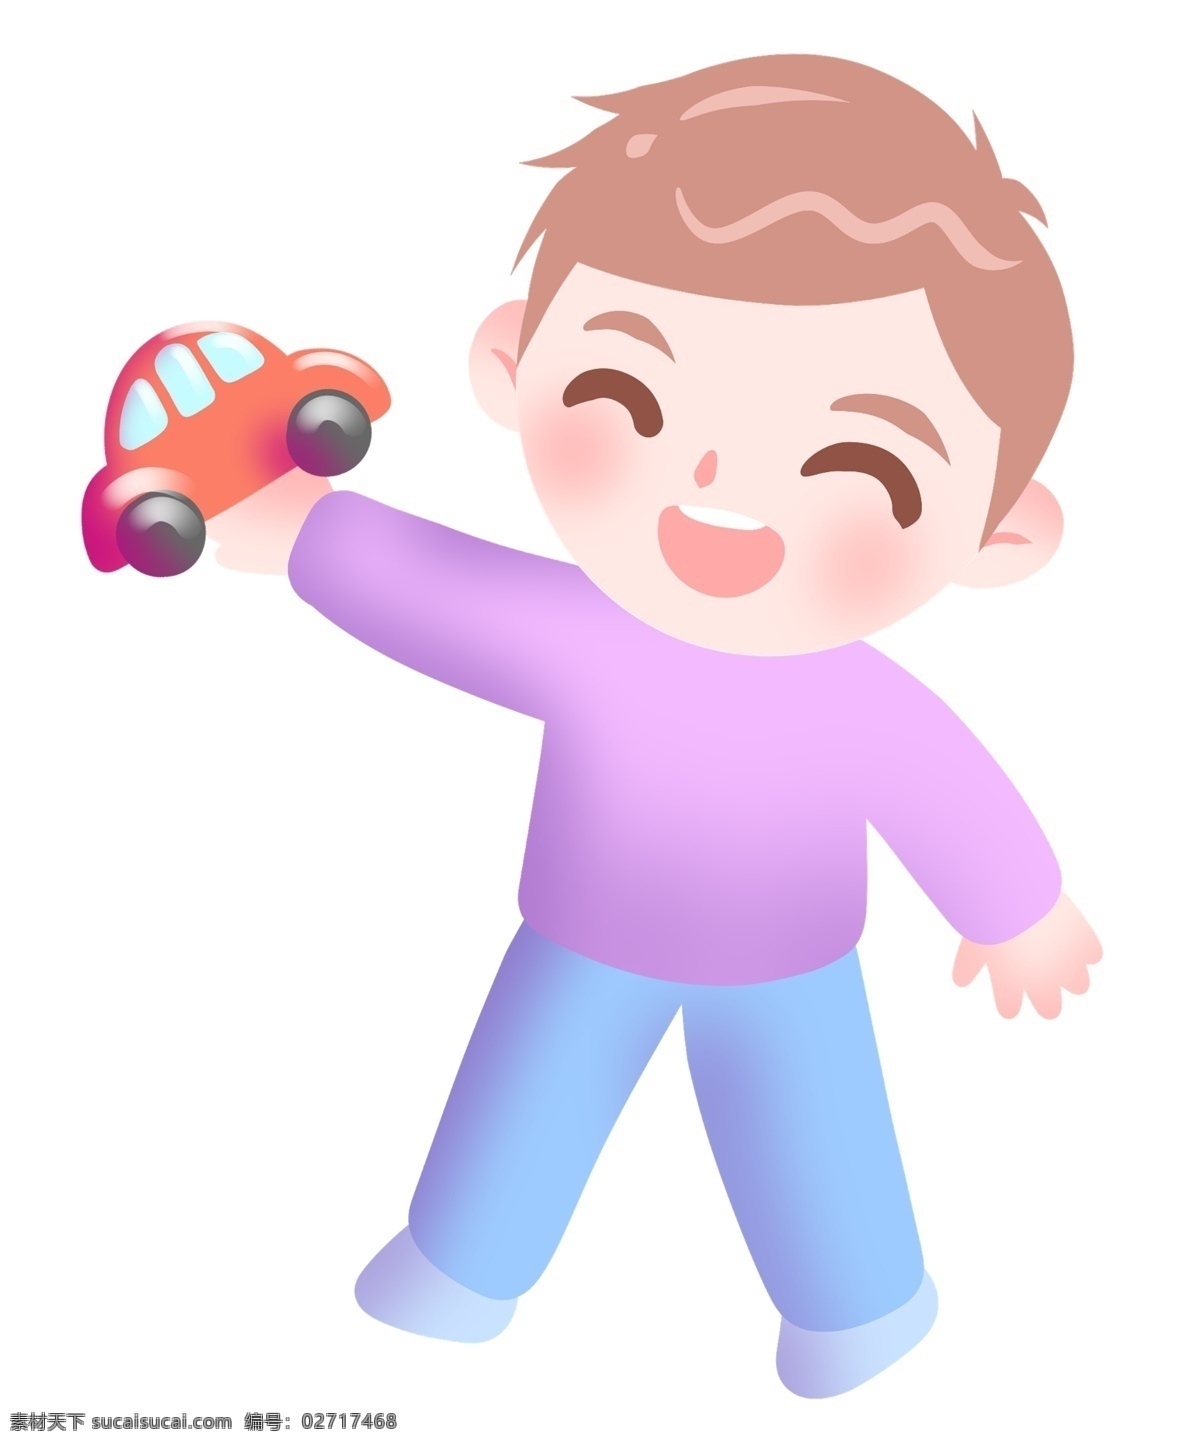 笑脸 汽车 卡通 插画 愉悦的男孩 卡通插画 笑脸插画 表情插画 表情 开心 快乐 愉快 红色的汽车